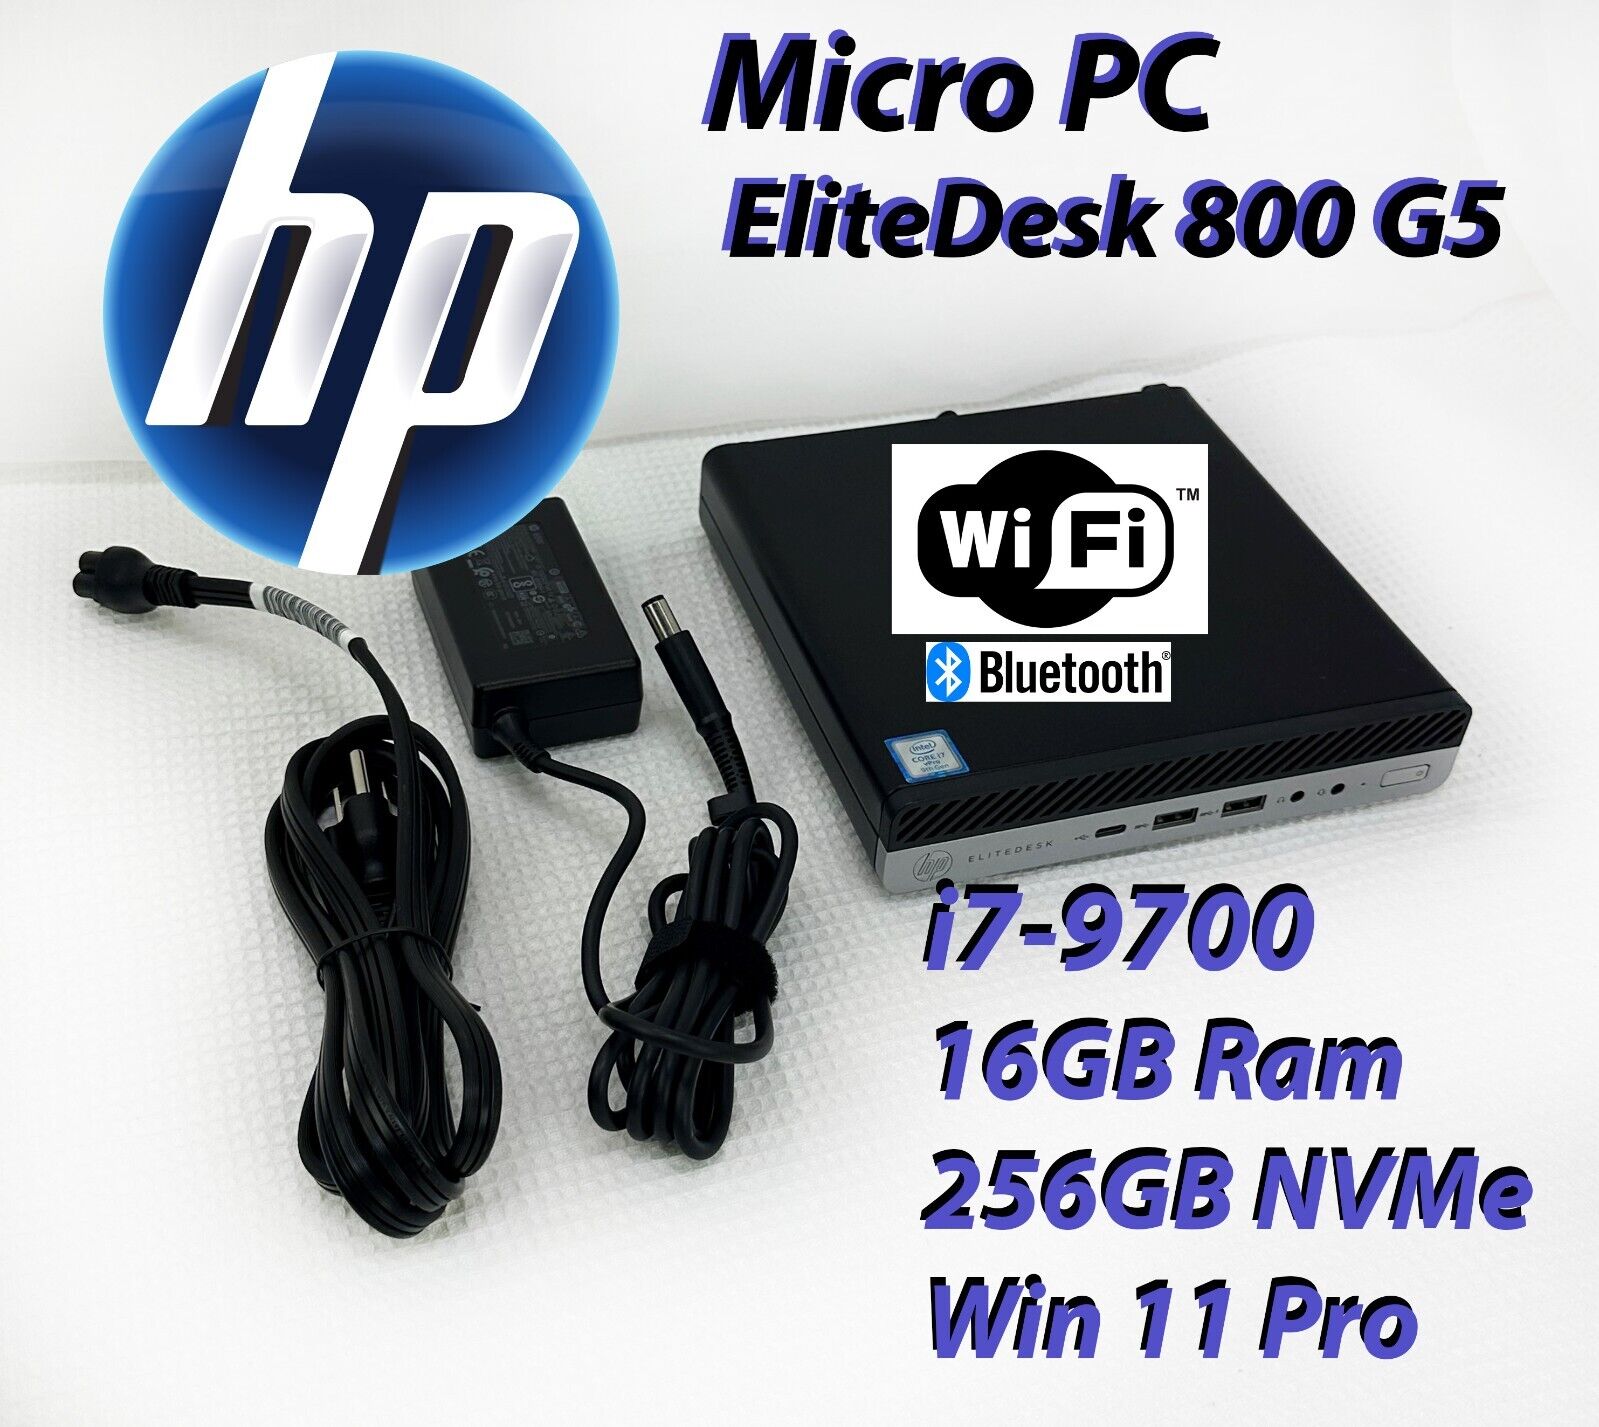 HP EliteDesk 800 G5 Mini, i7-9700T, 16GB RAM, 256GB NVMe SSD, Wi-Fi +BT, Win 11P